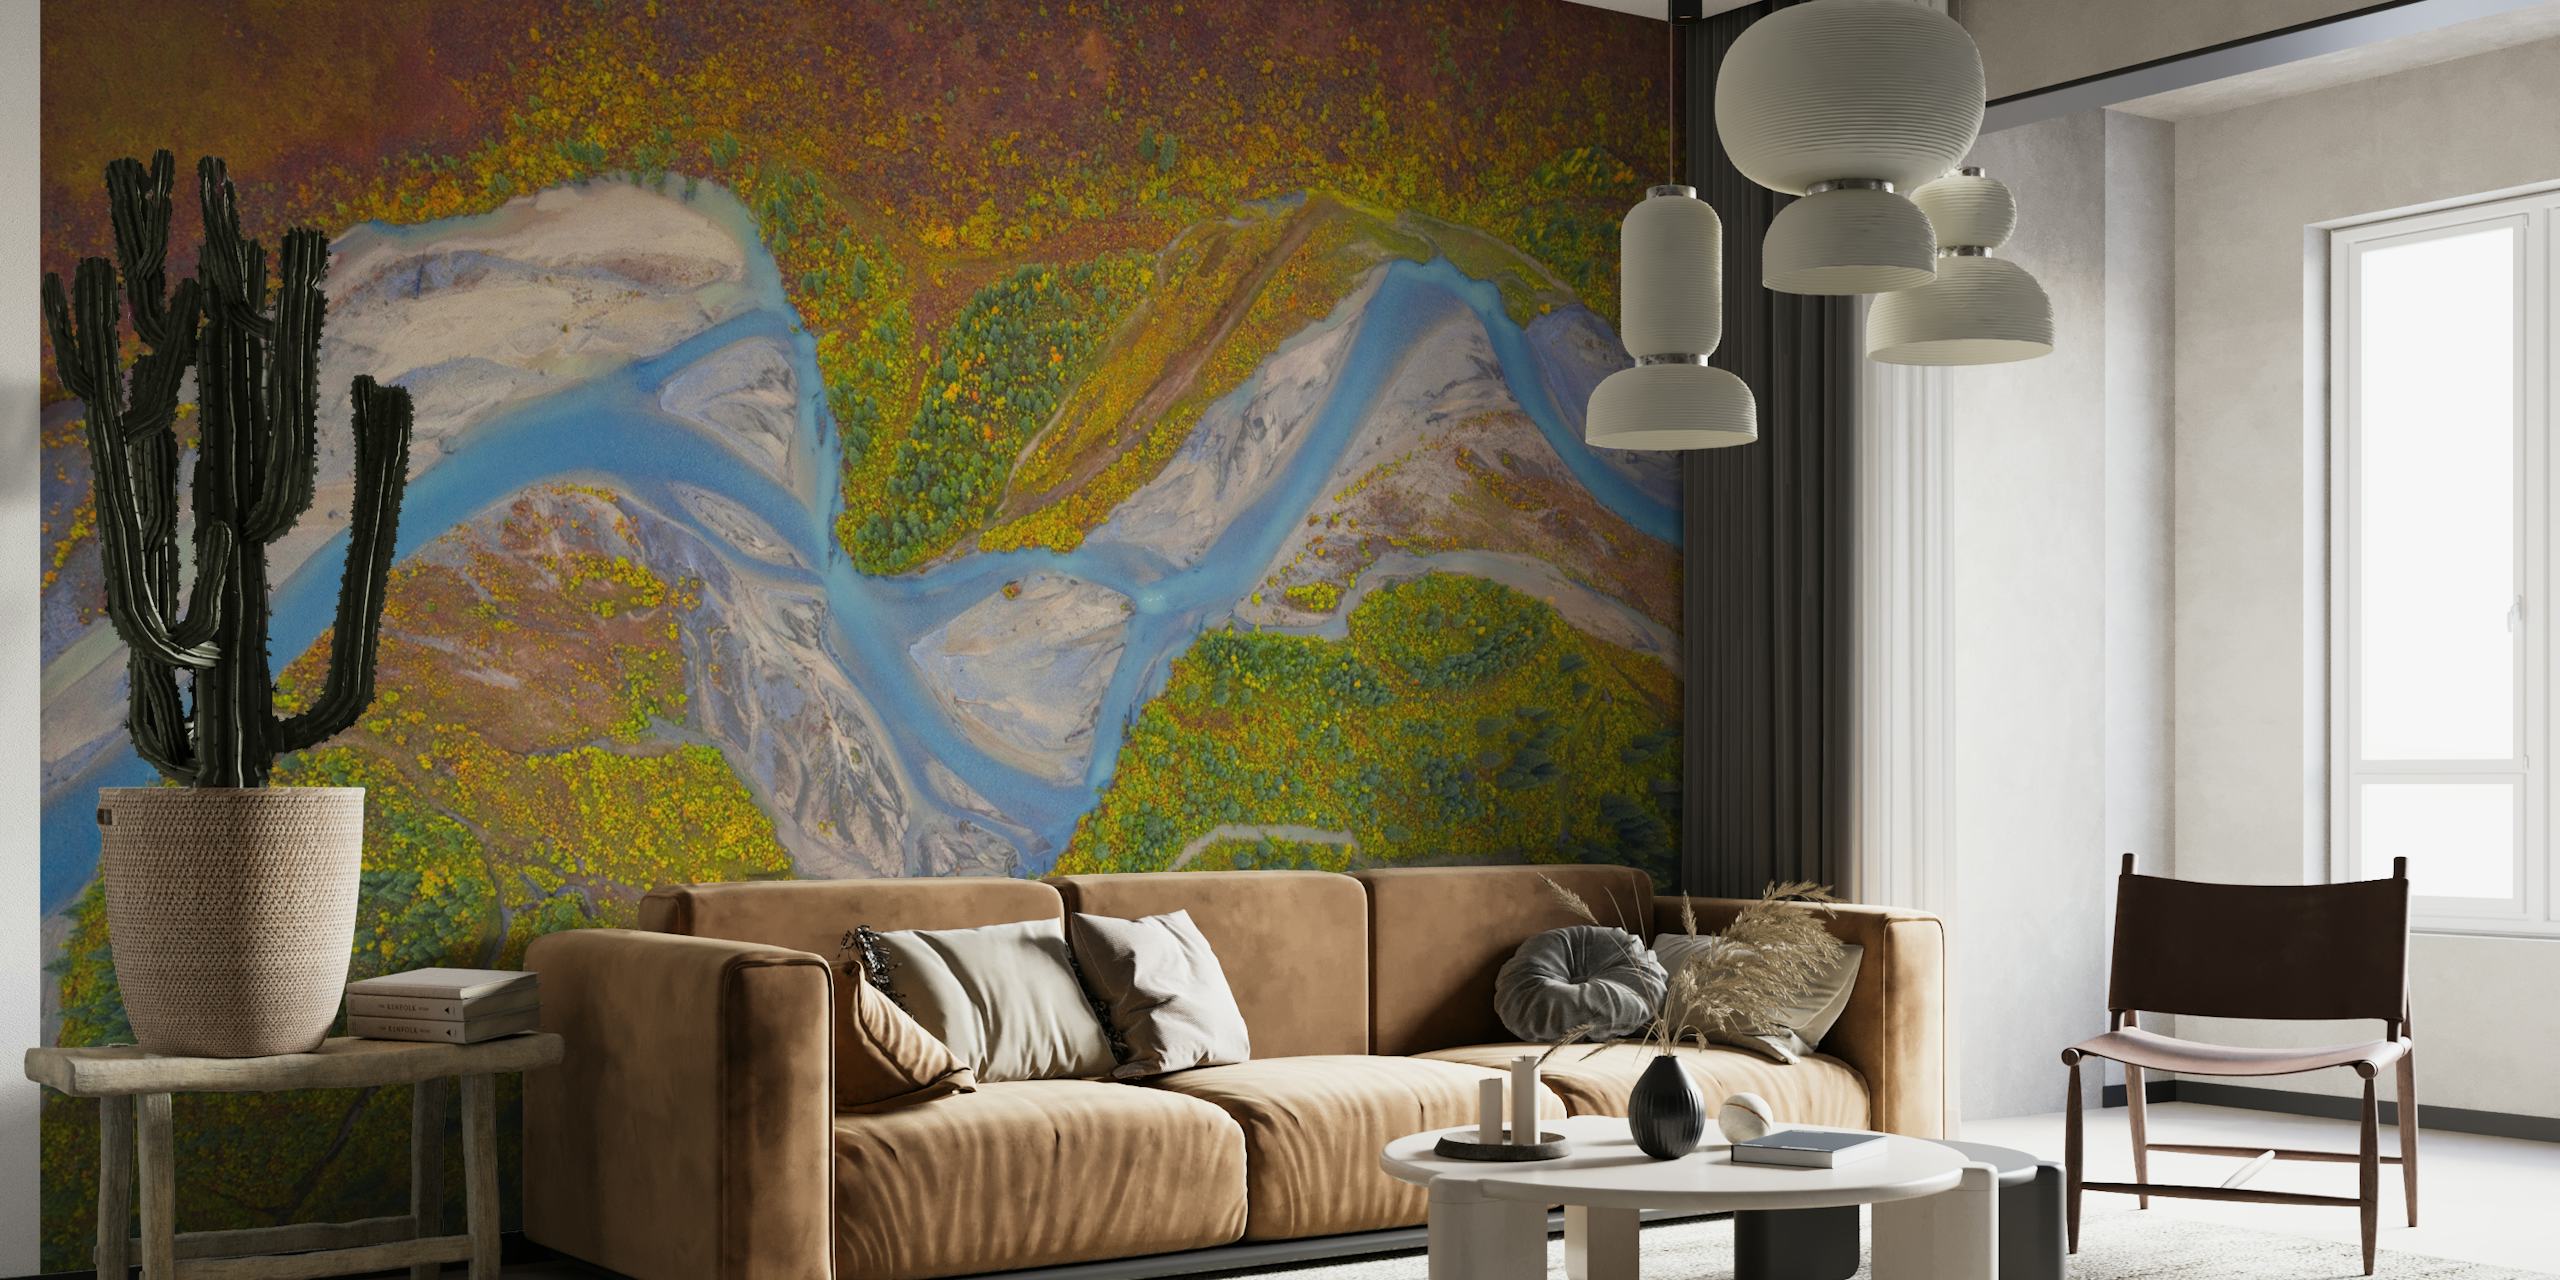 Zidna slika rijeke Matanuska sa slikovitim krajolikom Aljaske, vijugavom rijekom i šarenim livadama